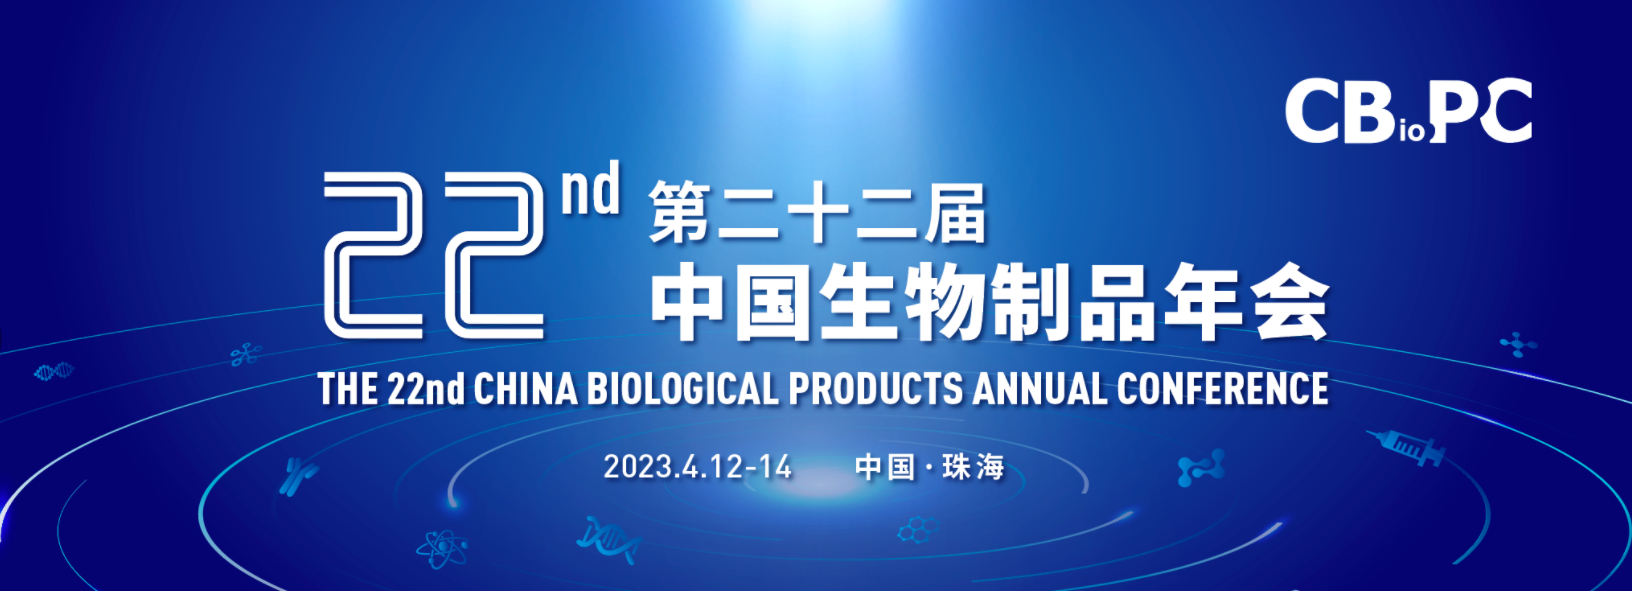 大发彩票welcome登录入口邀请您参加CBioPC2022第二十二届生物制品年会